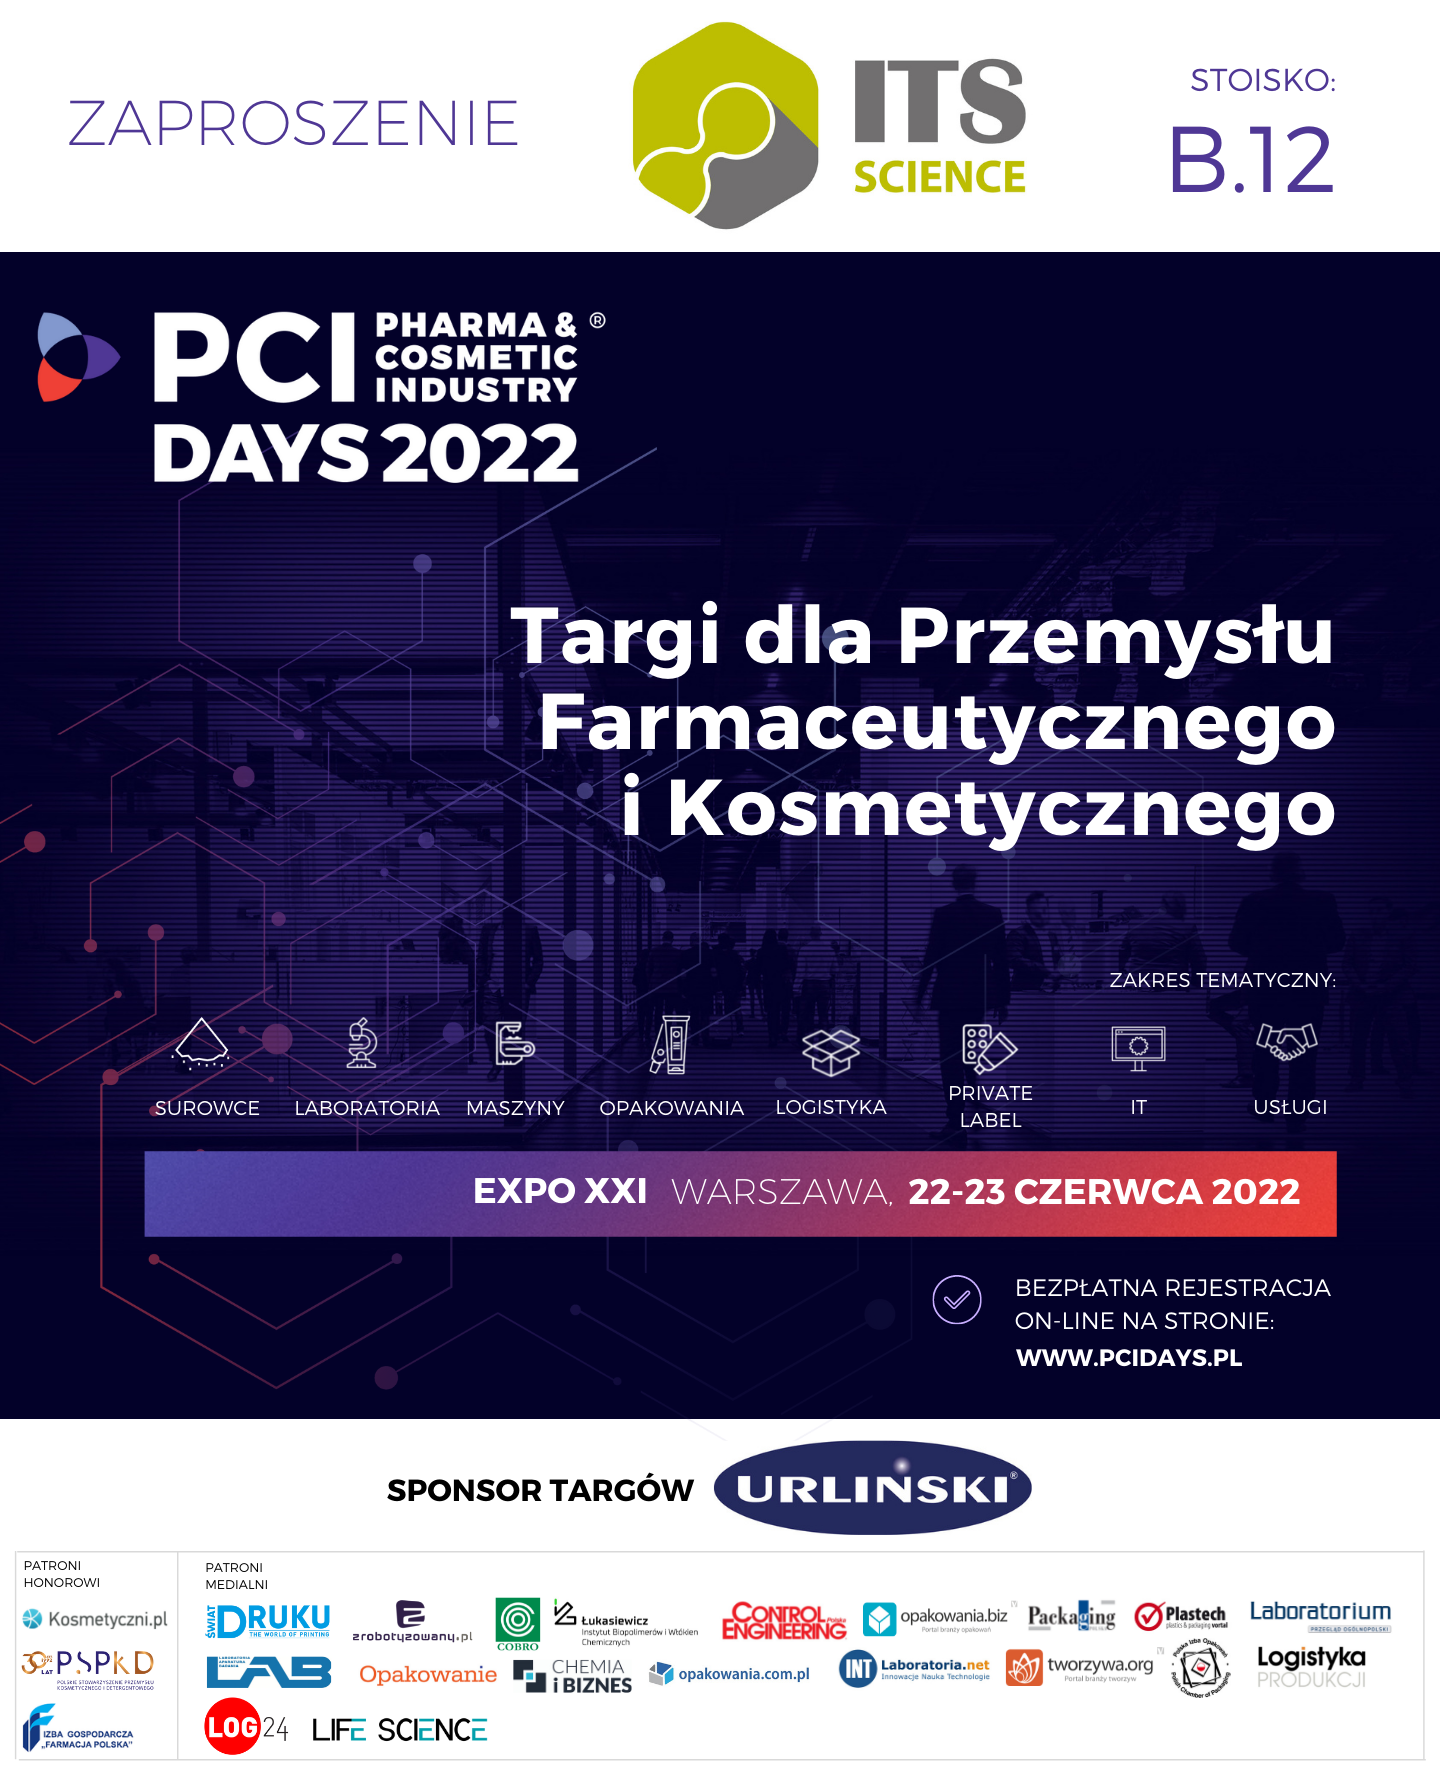 Zapraszamy do odwiedzenia naszego stoiska nr B.12 na targach PCI Days 2022